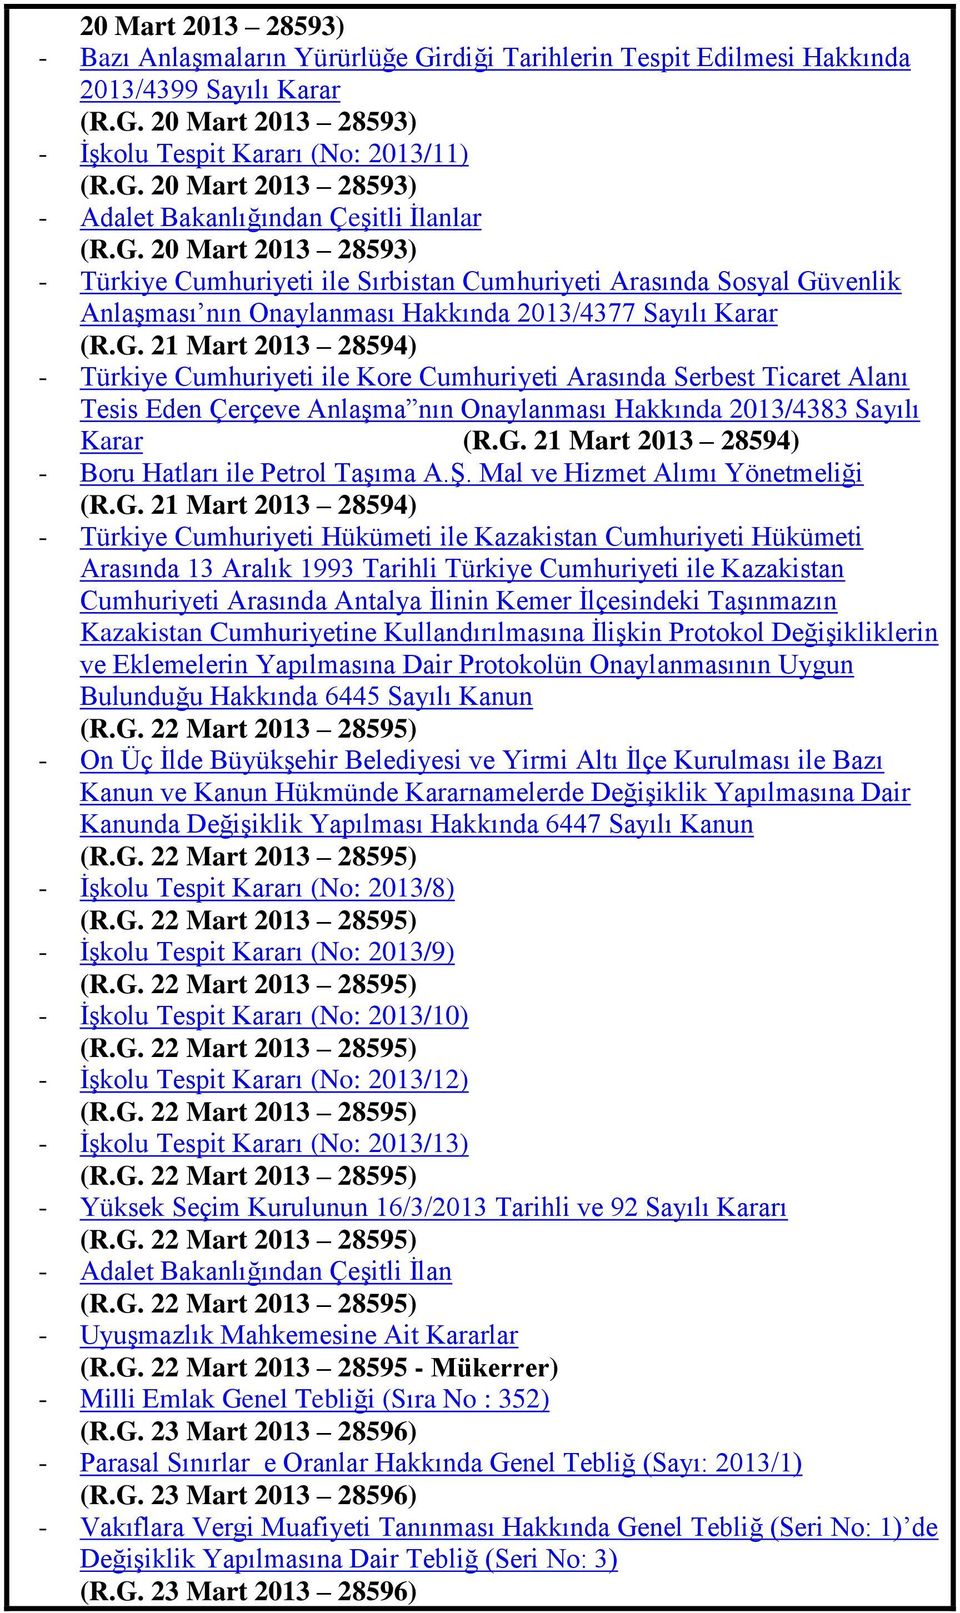 G. 21 Mart 2013 28594) - Boru Hatları ile Petrol TaĢıma A.ġ. Mal ve Hizmet Alımı Yönetmeliği (R.G. 21 Mart 2013 28594) - Türkiye Cumhuriyeti Hükümeti ile Kazakistan Cumhuriyeti Hükümeti Arasında 13